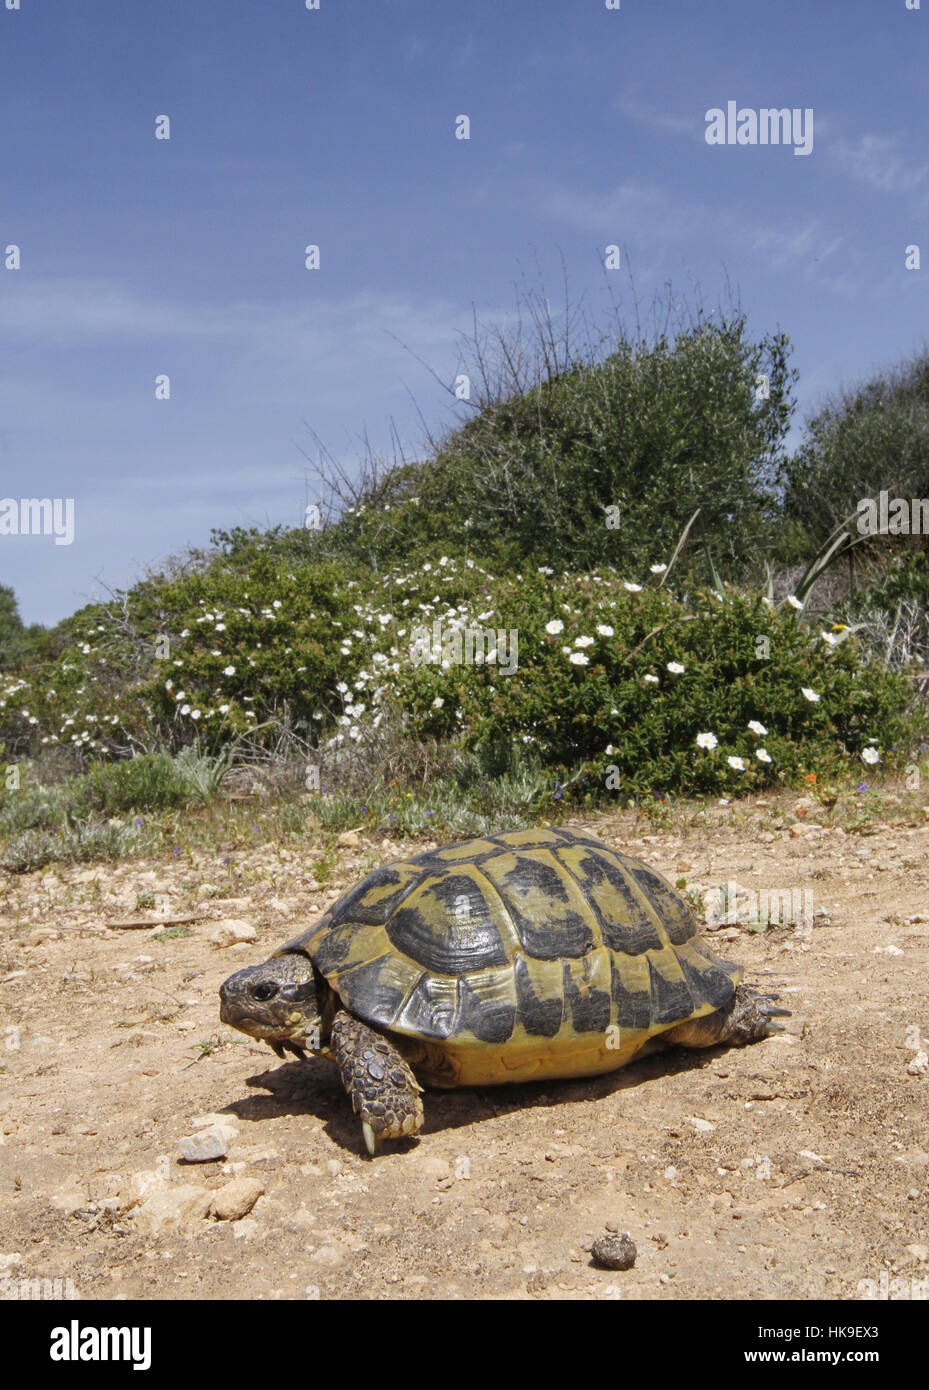 Sperone mediterraneo-thighet tartaruga (Testudo graeca graeca) adulto tra macchia mediterranea, attraversando il sentiero, Menorca, isole Baleari, Spagna, Ap Foto Stock